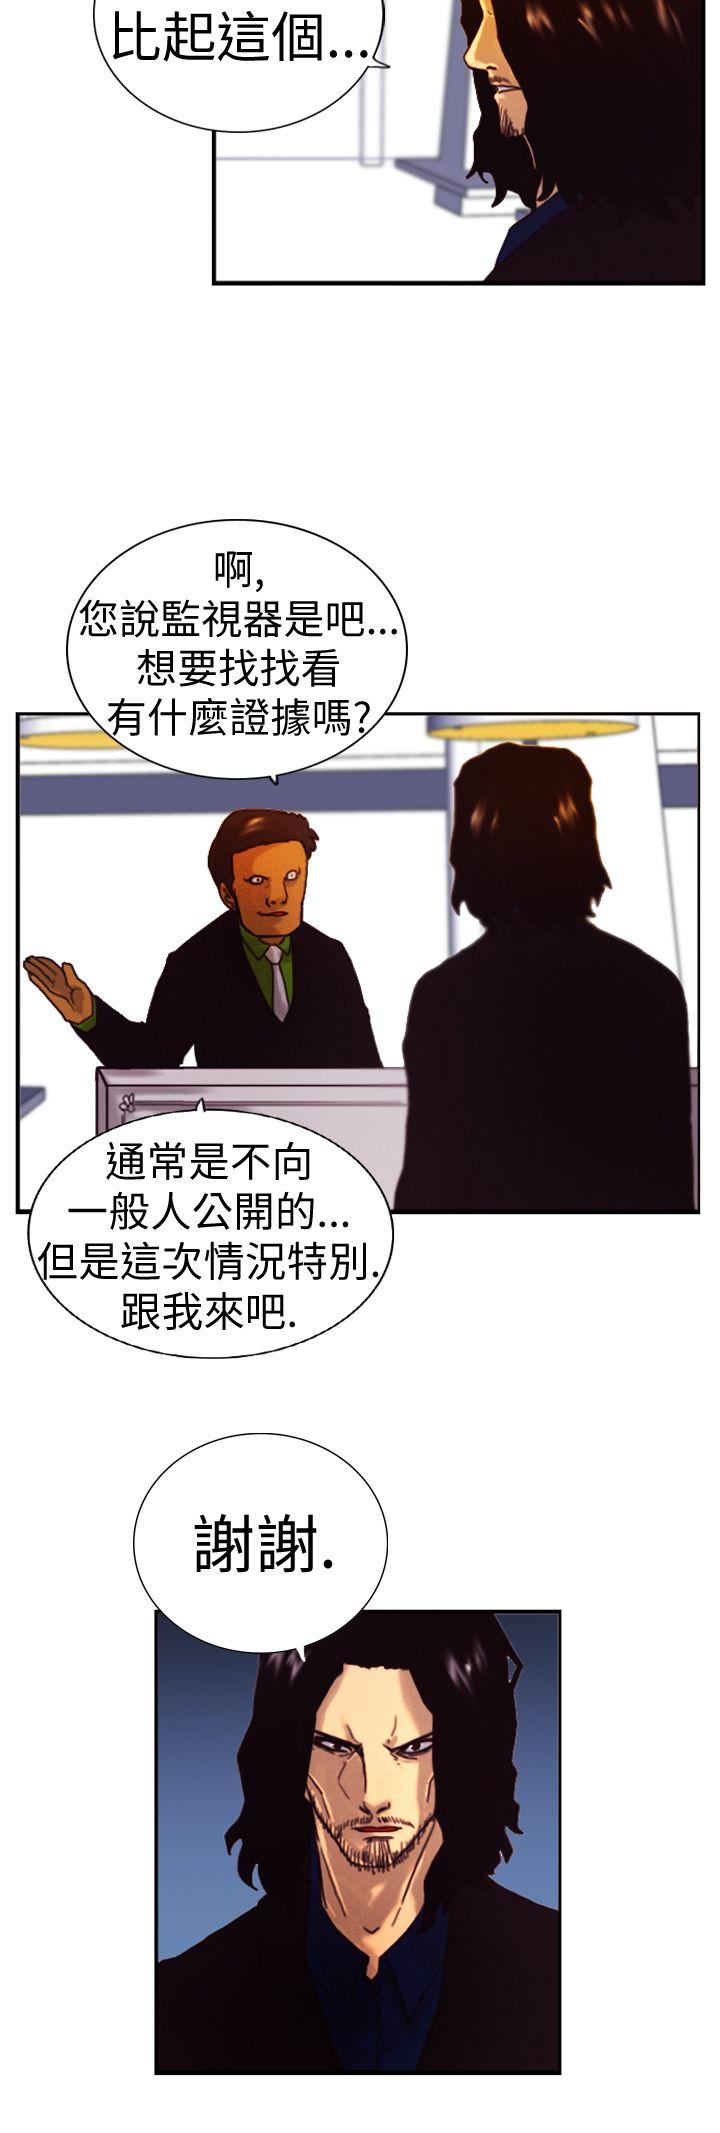 韩国污漫画 覺醒 第4话疑心 10